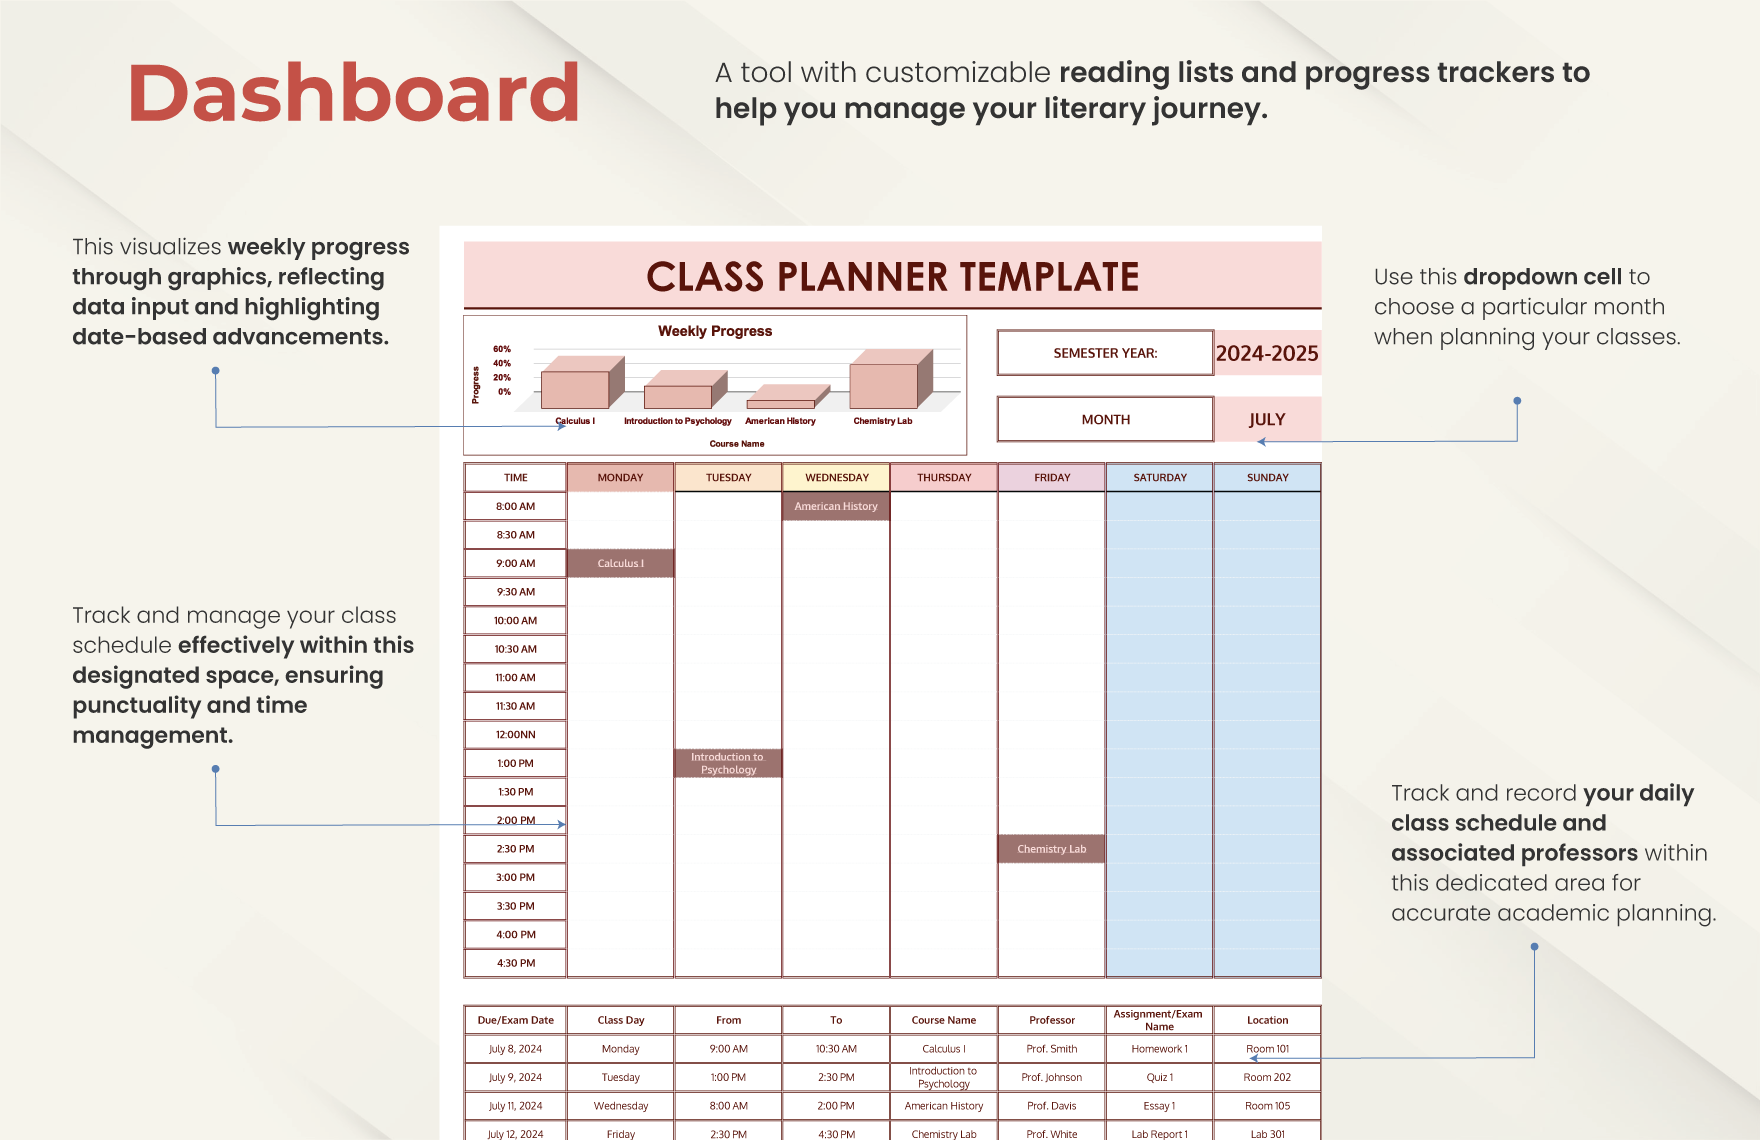 Class Planner Template